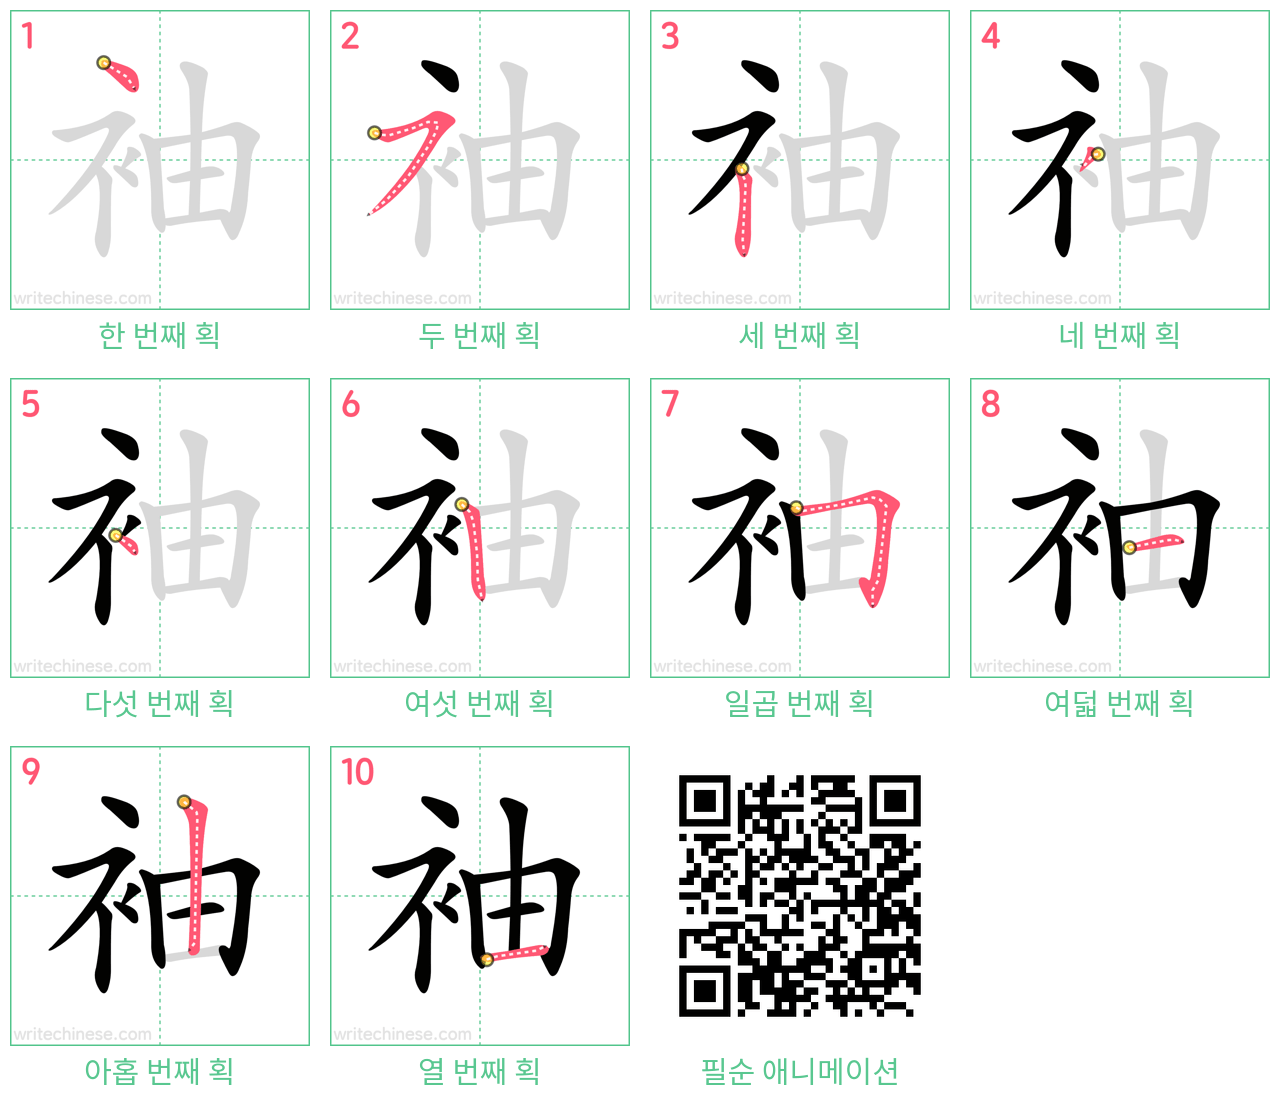 袖 step-by-step stroke order diagrams